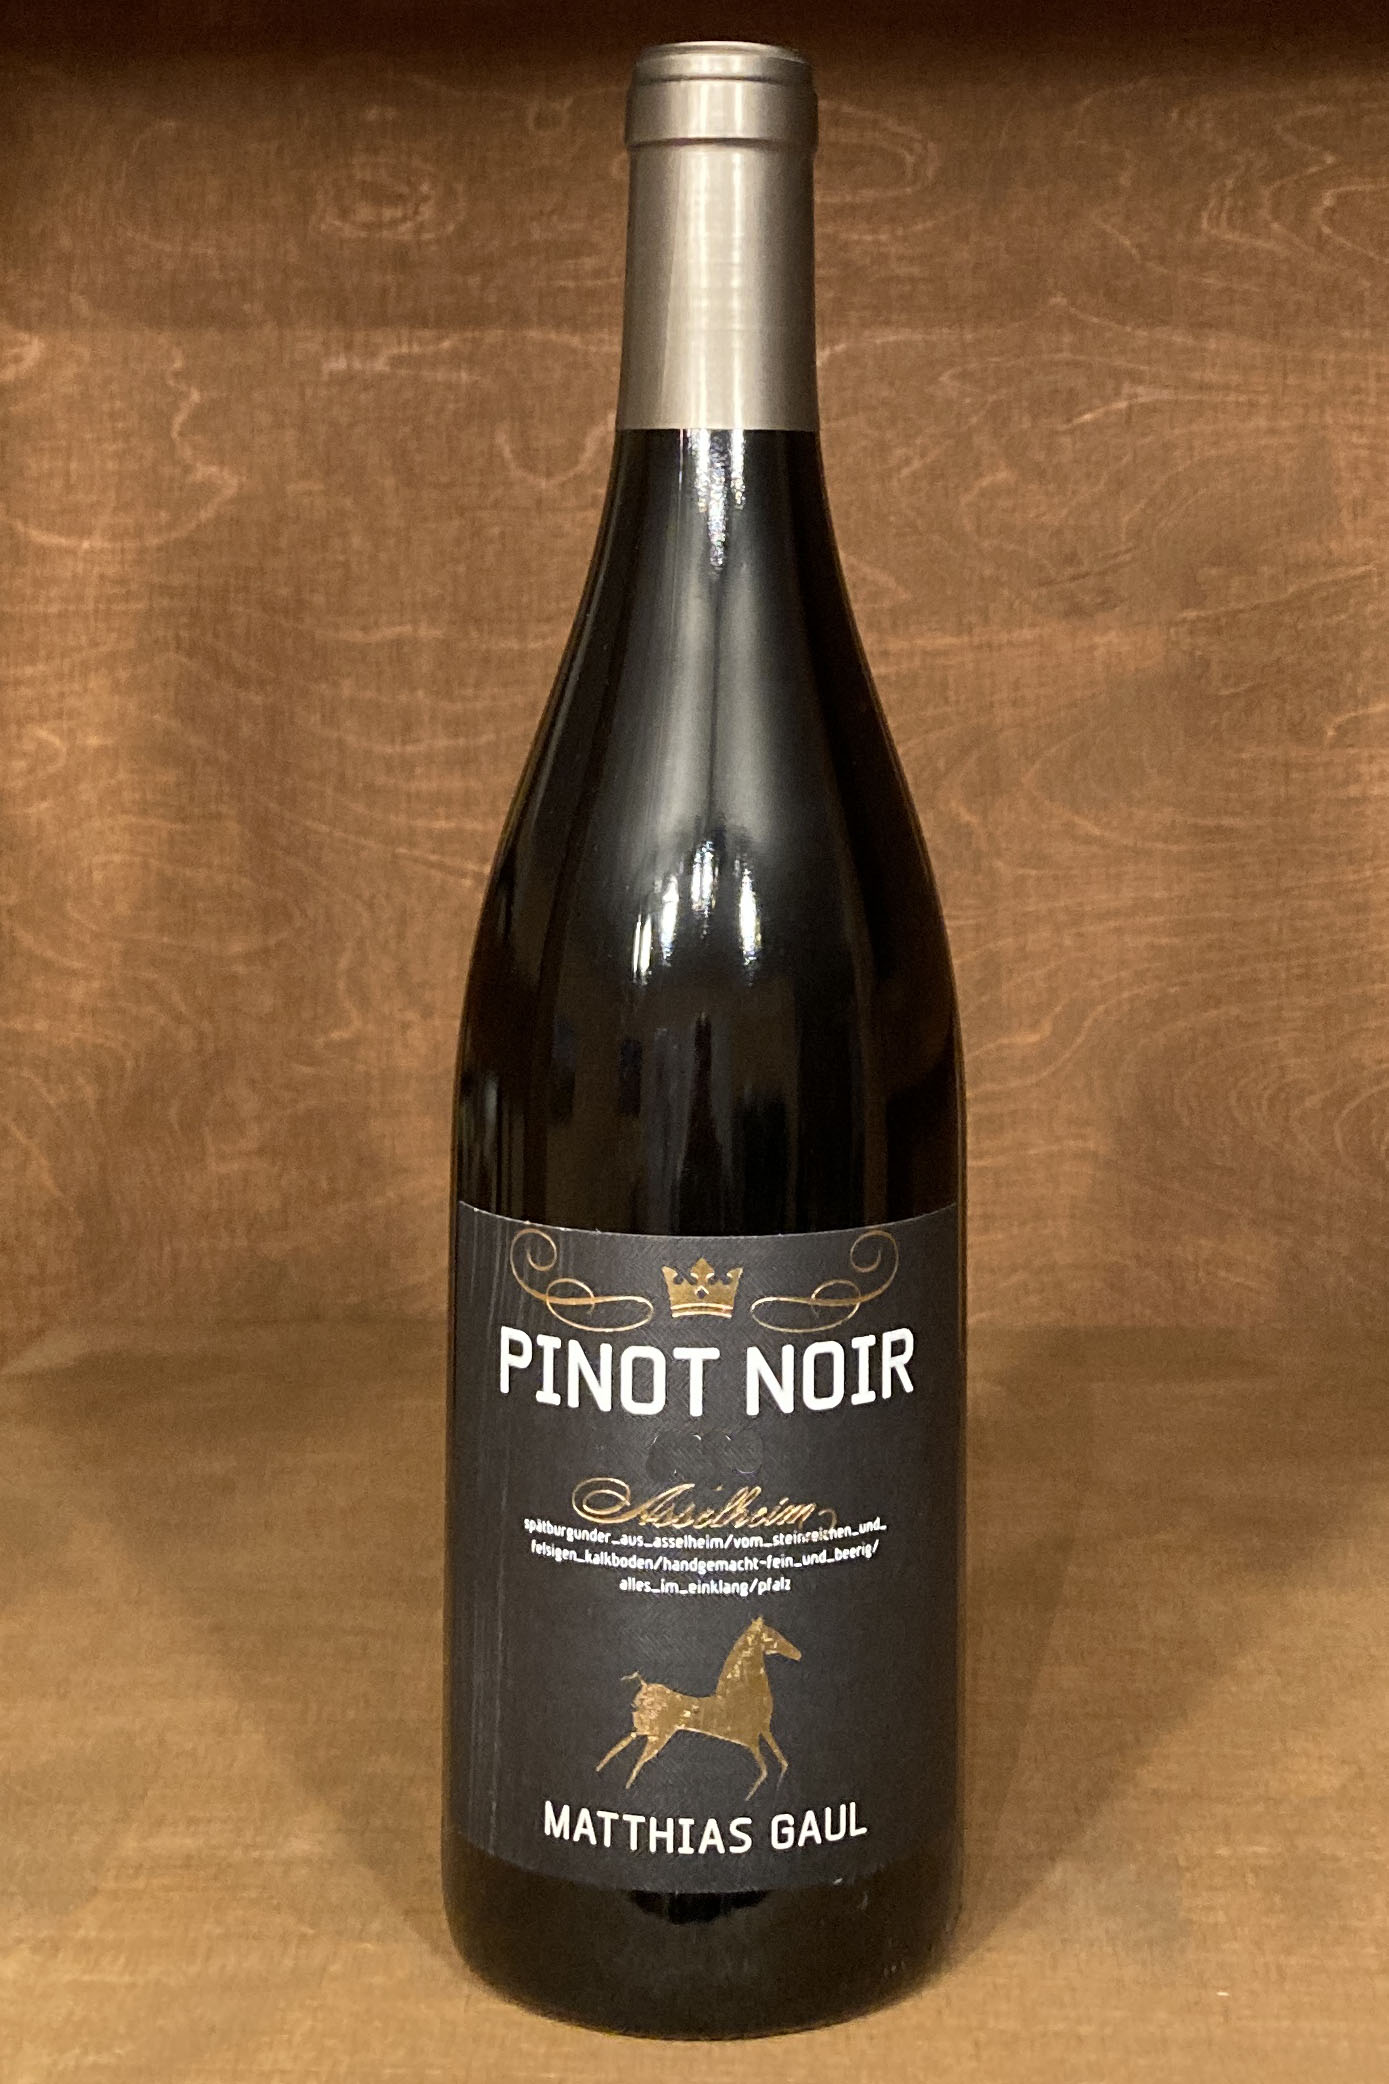 2020 Pinot Noir Asselheim, Weingut Matthias Gaul